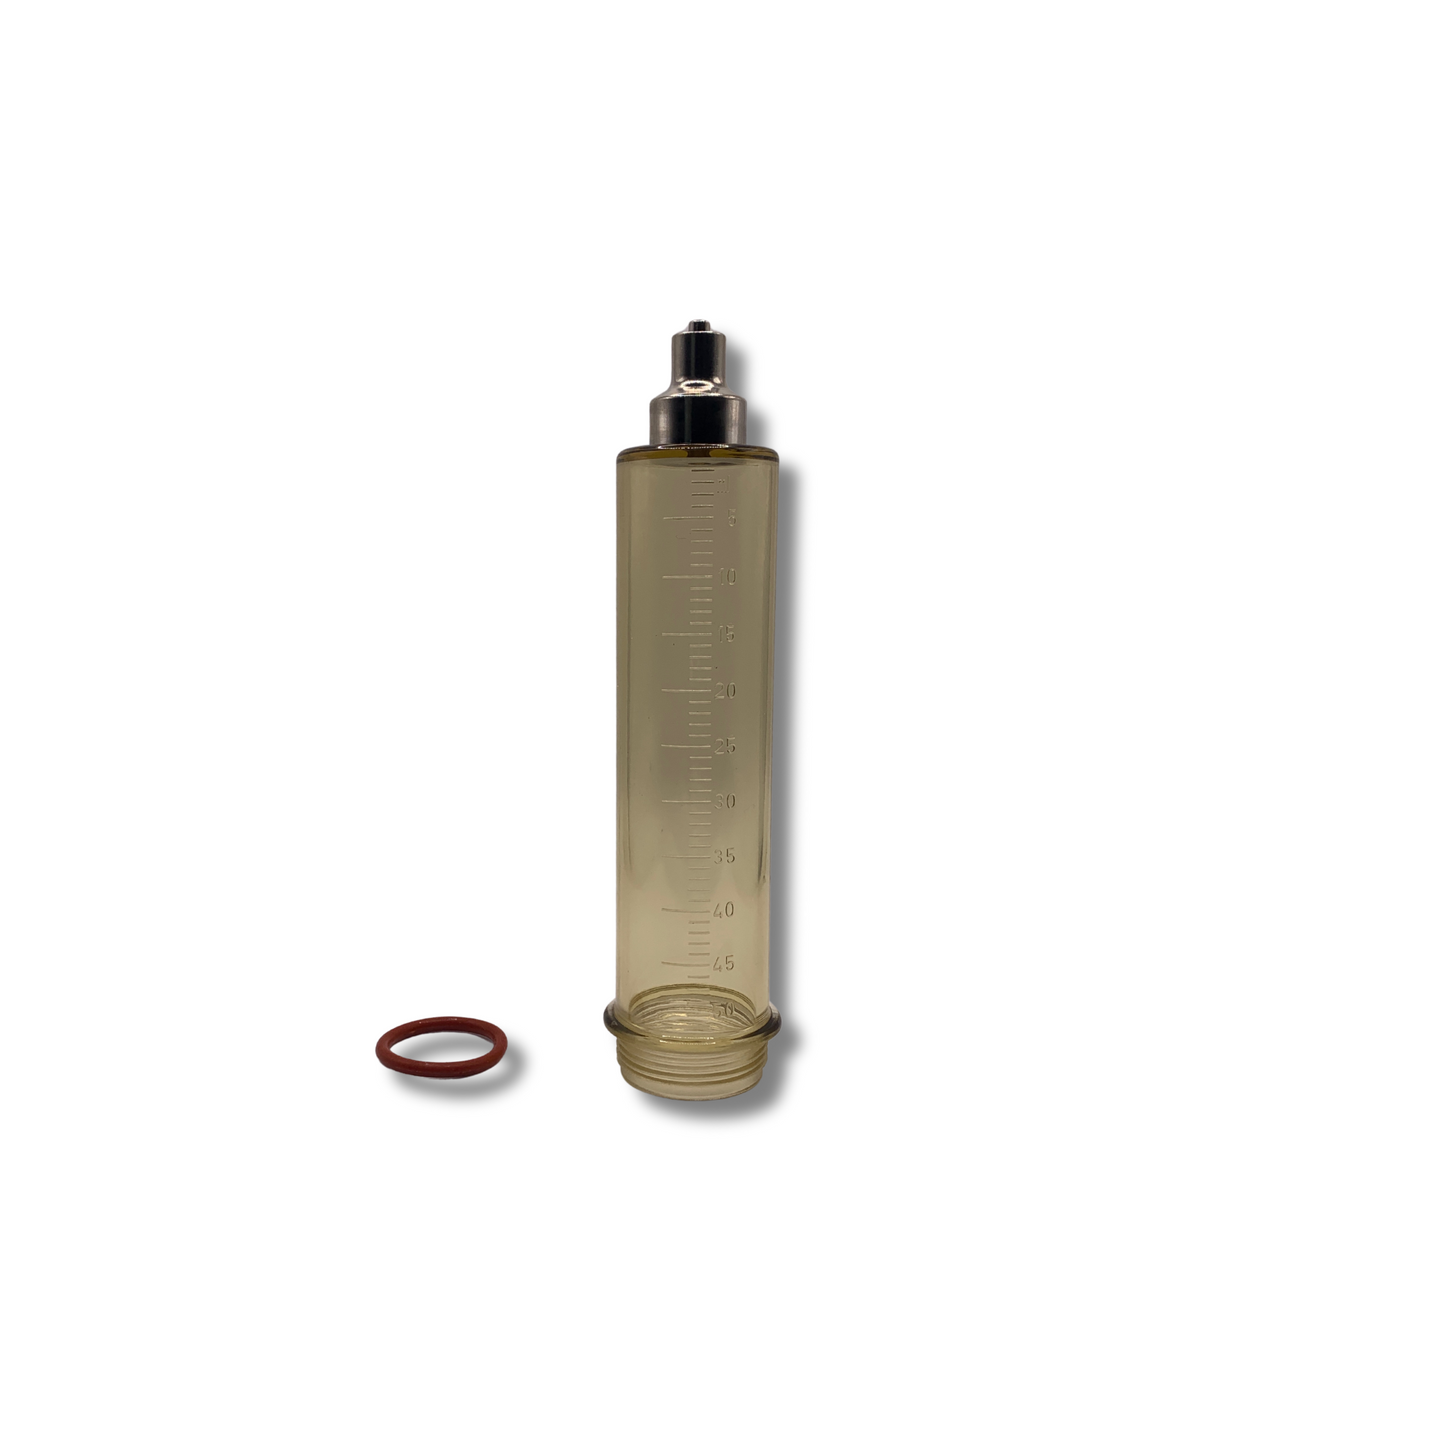 HerculesAG Barrel & O-Ring Replacement for Repeater Syringe